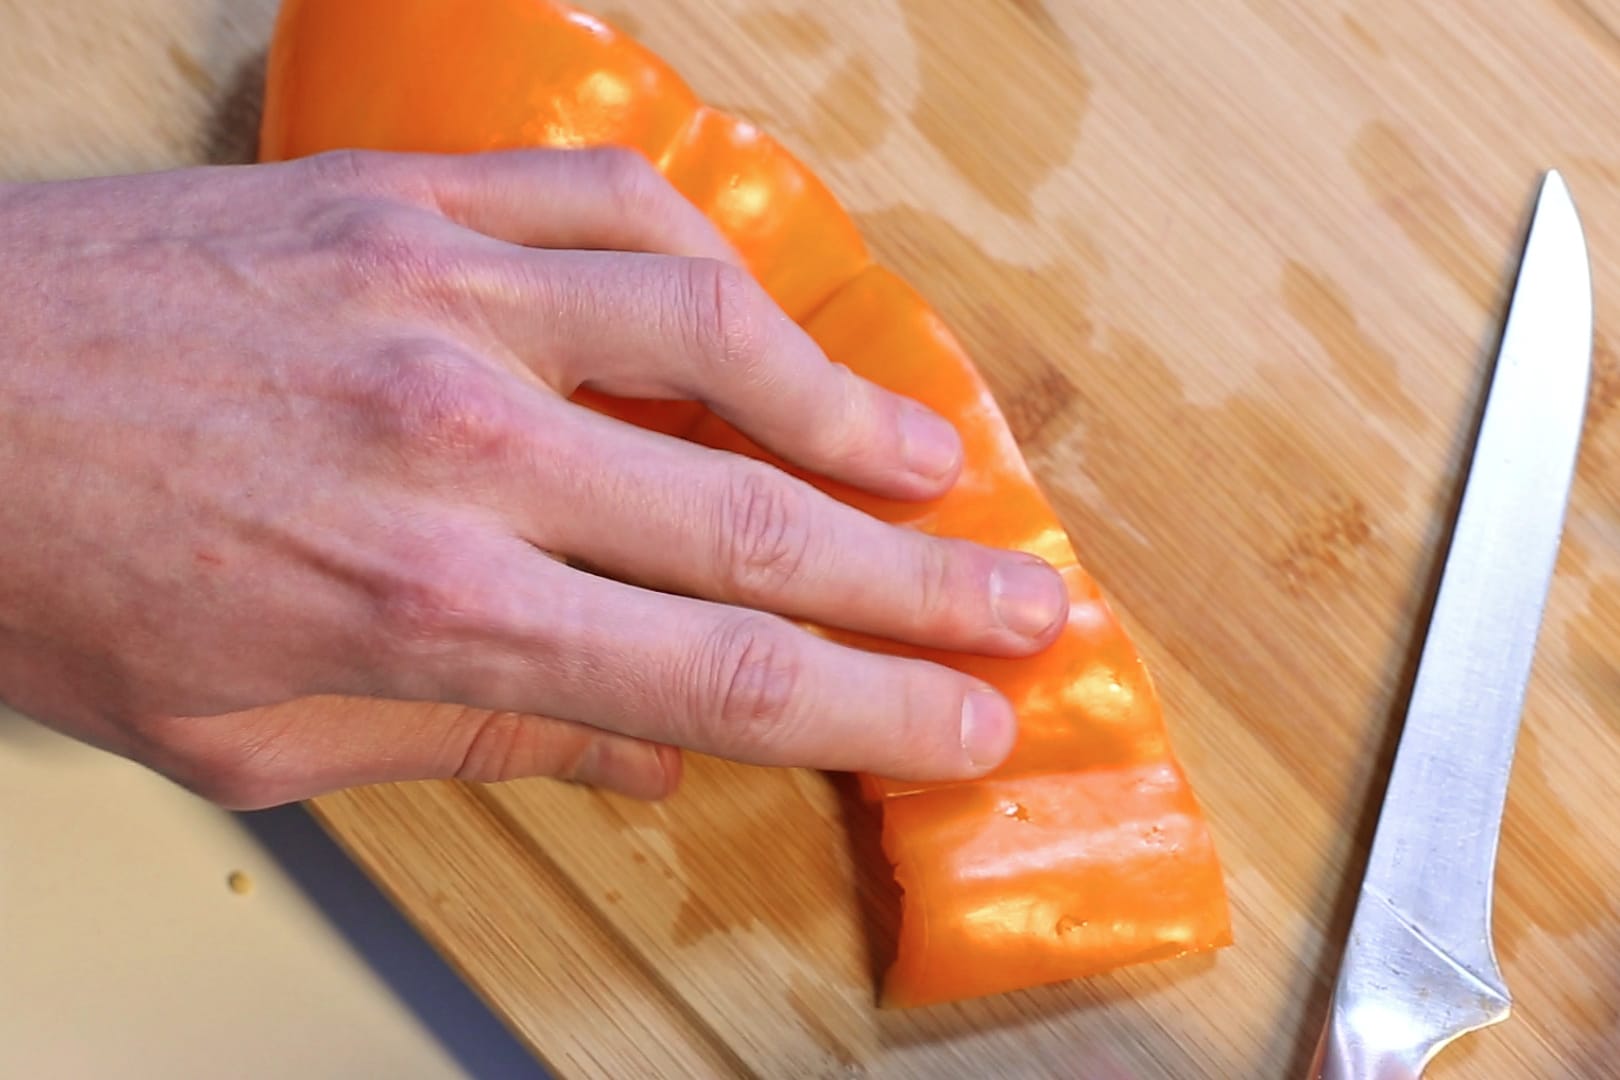 Schritt 5: Die entkernte Paprika kann man nun flach auf das Brett drücken und dann in Streifen oder Würfel schneiden.